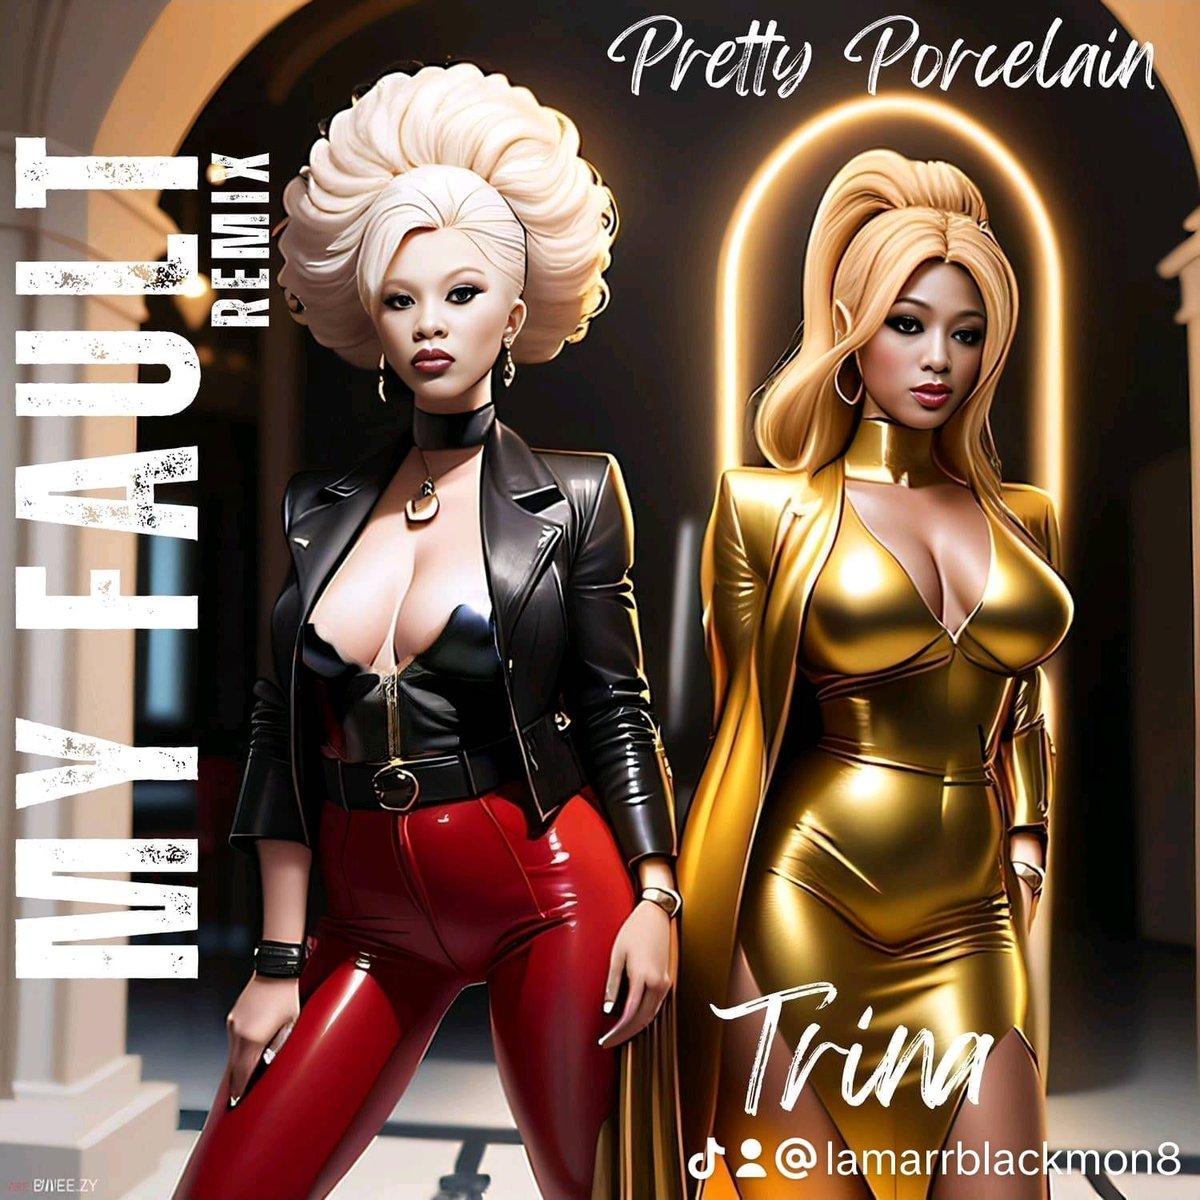 Miami Artist PRETTY #PORCELAIN305 drops Remix To 'My Fault' Feat Trina hbcuconnect.com/content/393174… #hbcuconnect